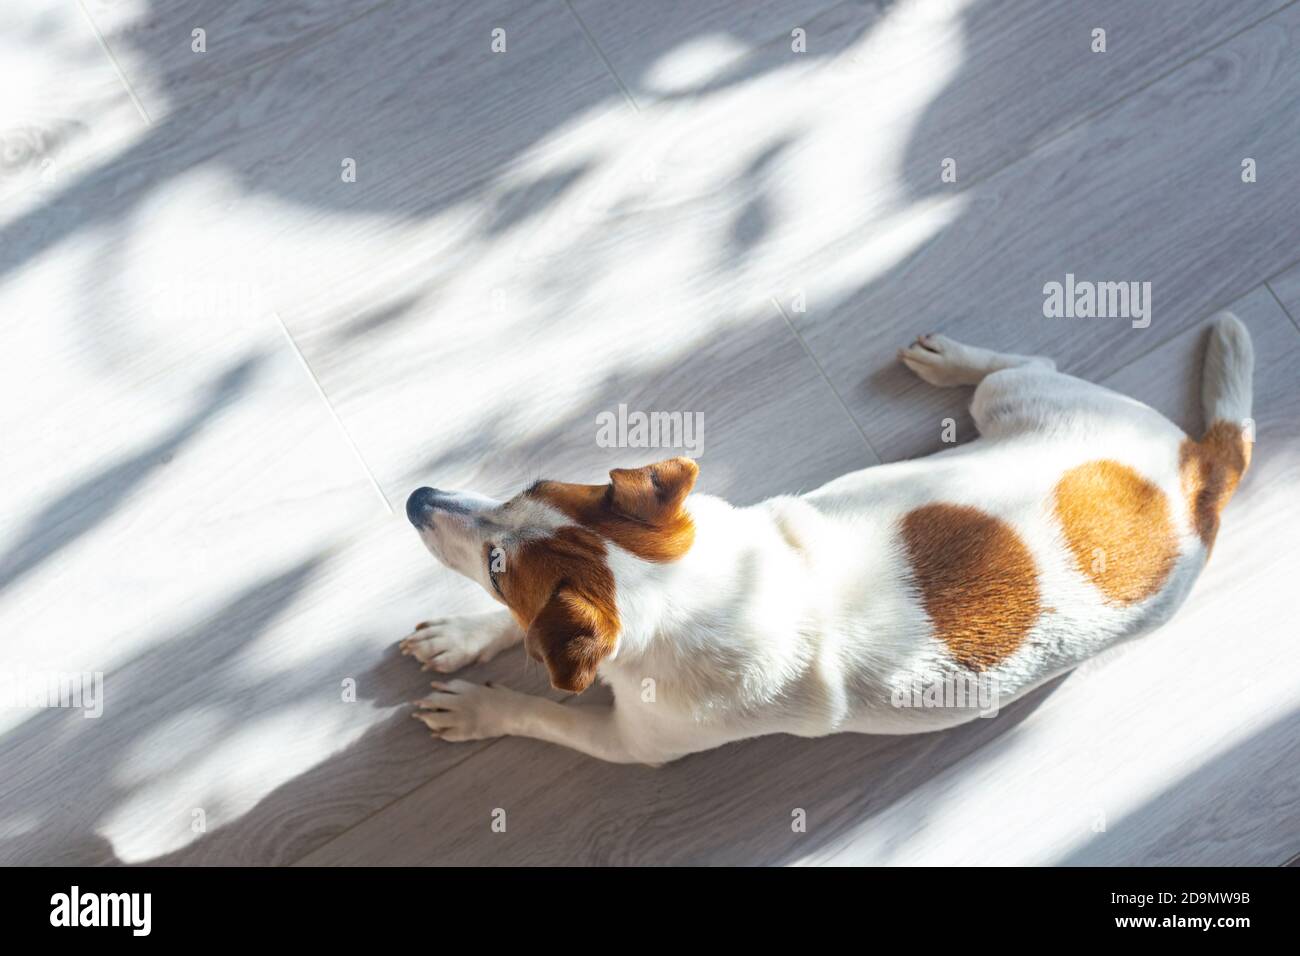 Le chien Jack Russell Terrier blanc avec des oreilles brunes et des taches rondes à l'arrière se trouve sur un sol blanc, se prélassant au soleil, vue du dessus. Jeu de lumière et d'ombre. Repos Banque D'Images